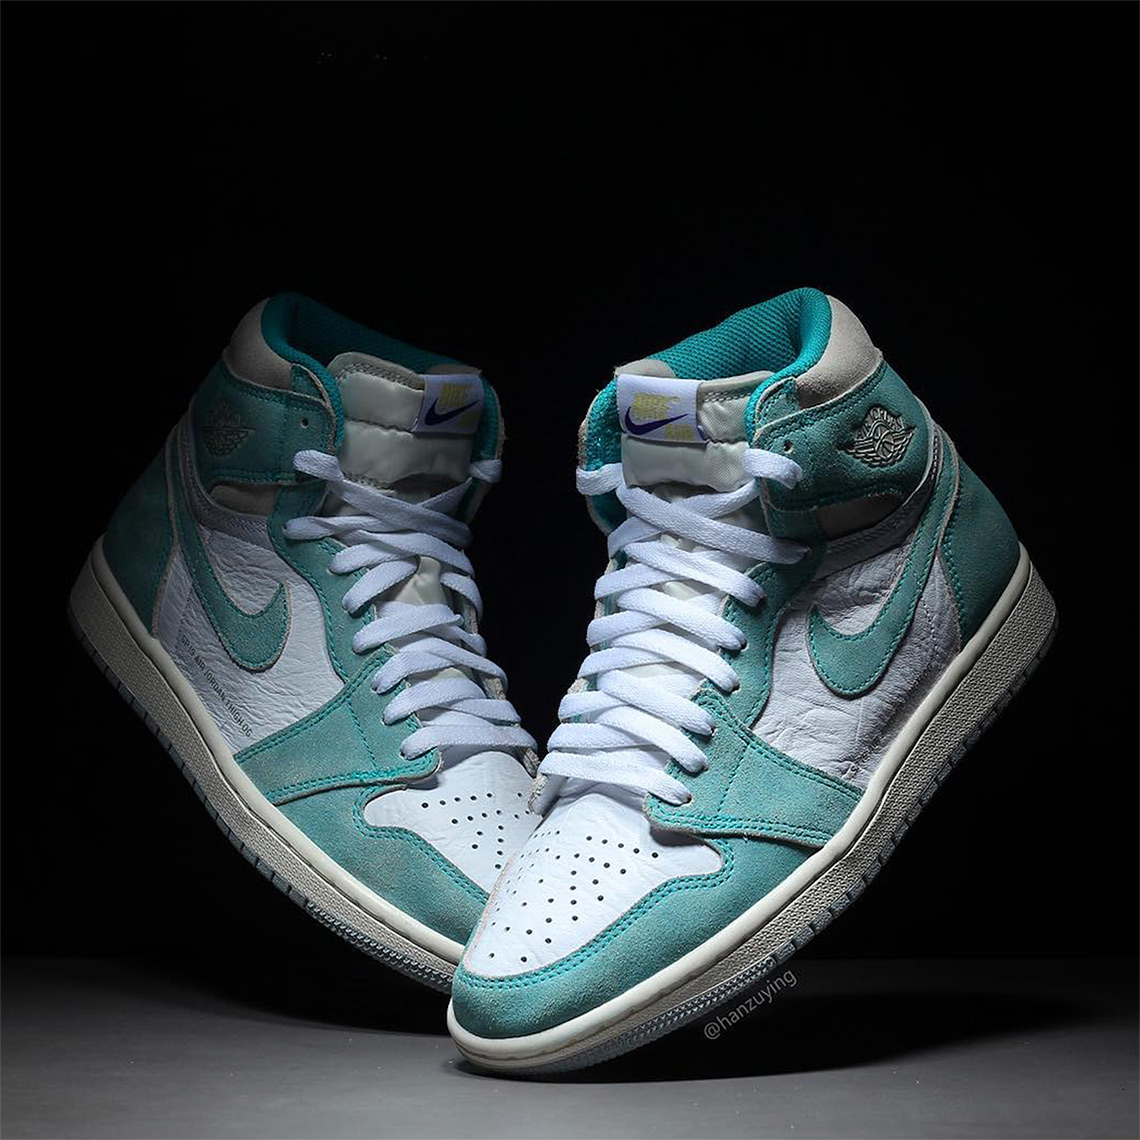 Air Jordan 1 Turbo Green 555088-311 Release Date | SneakerNews.com